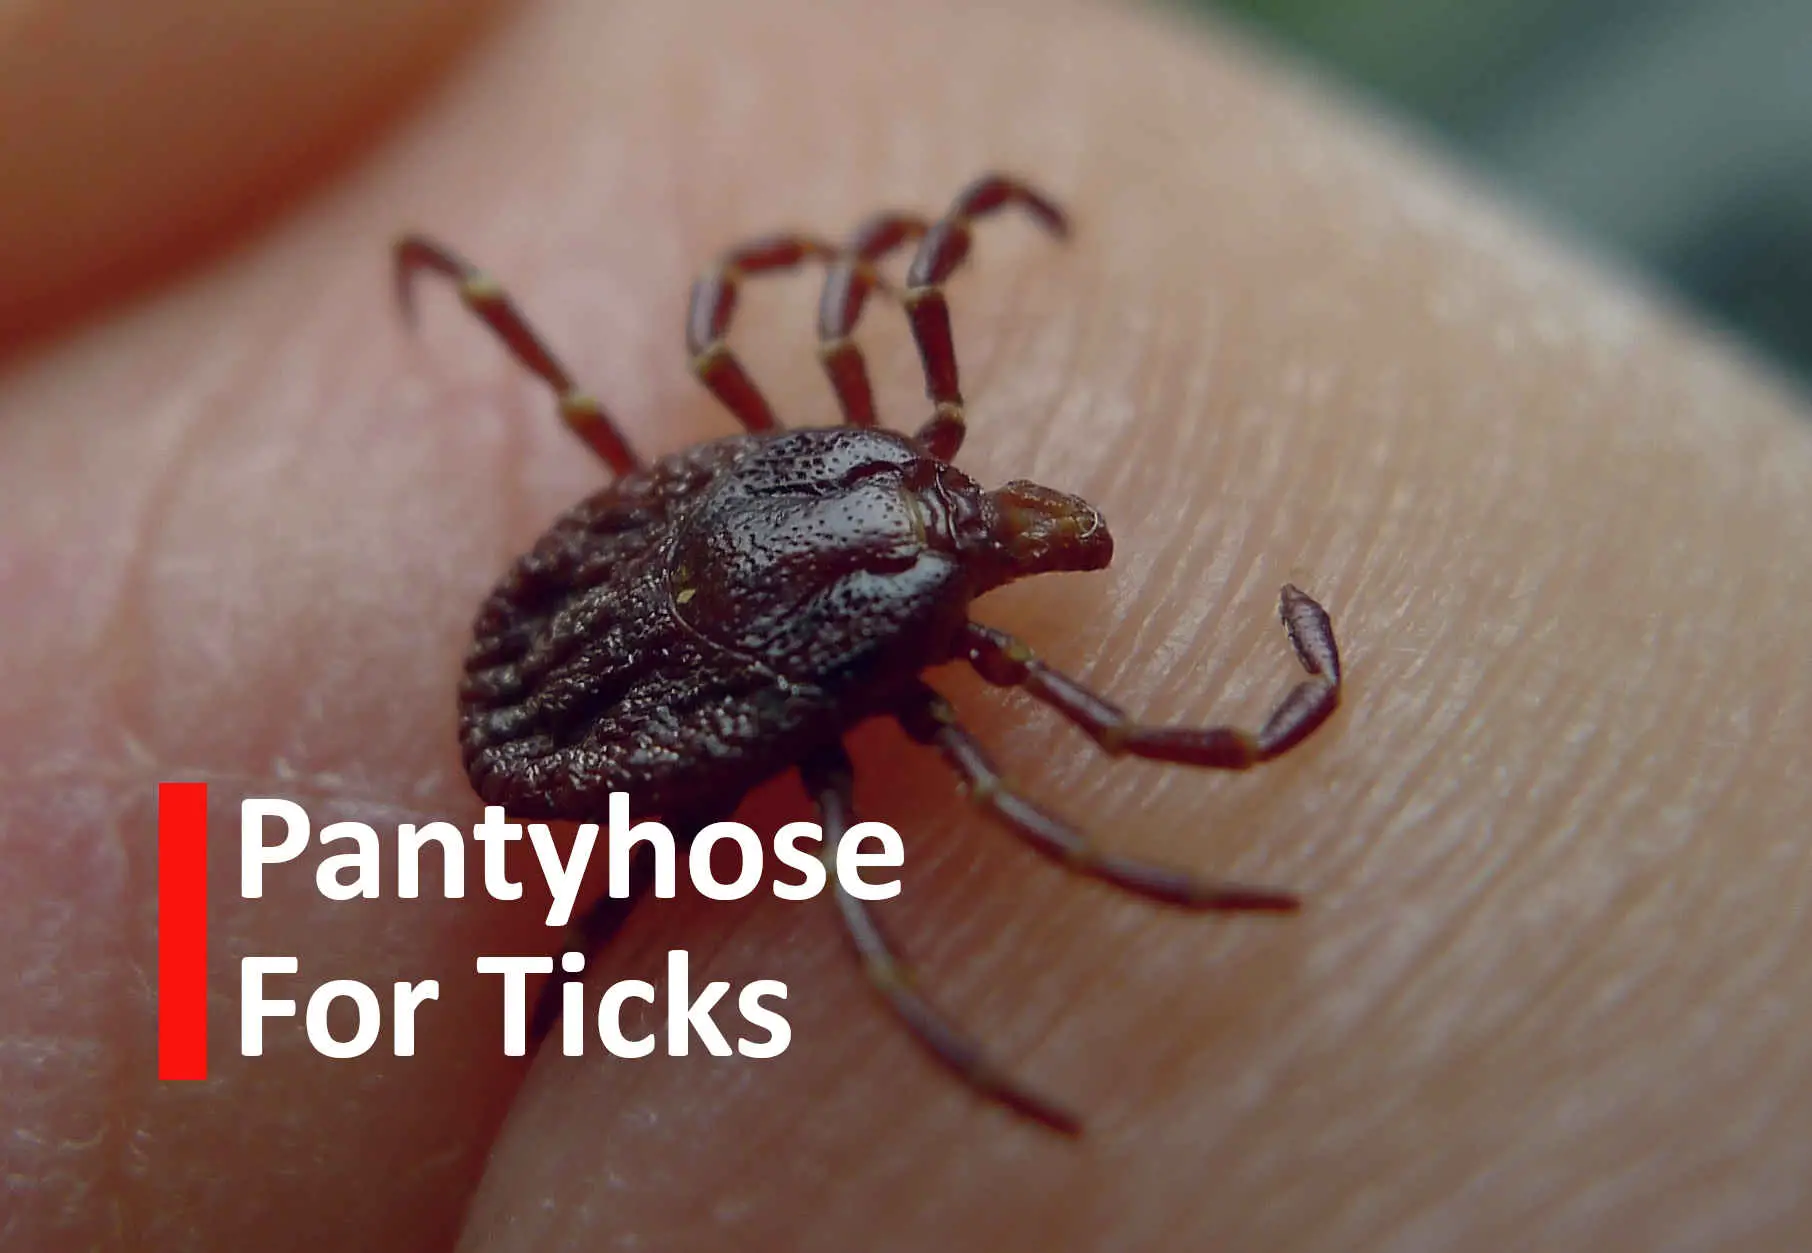 Pantyhose for Ticks